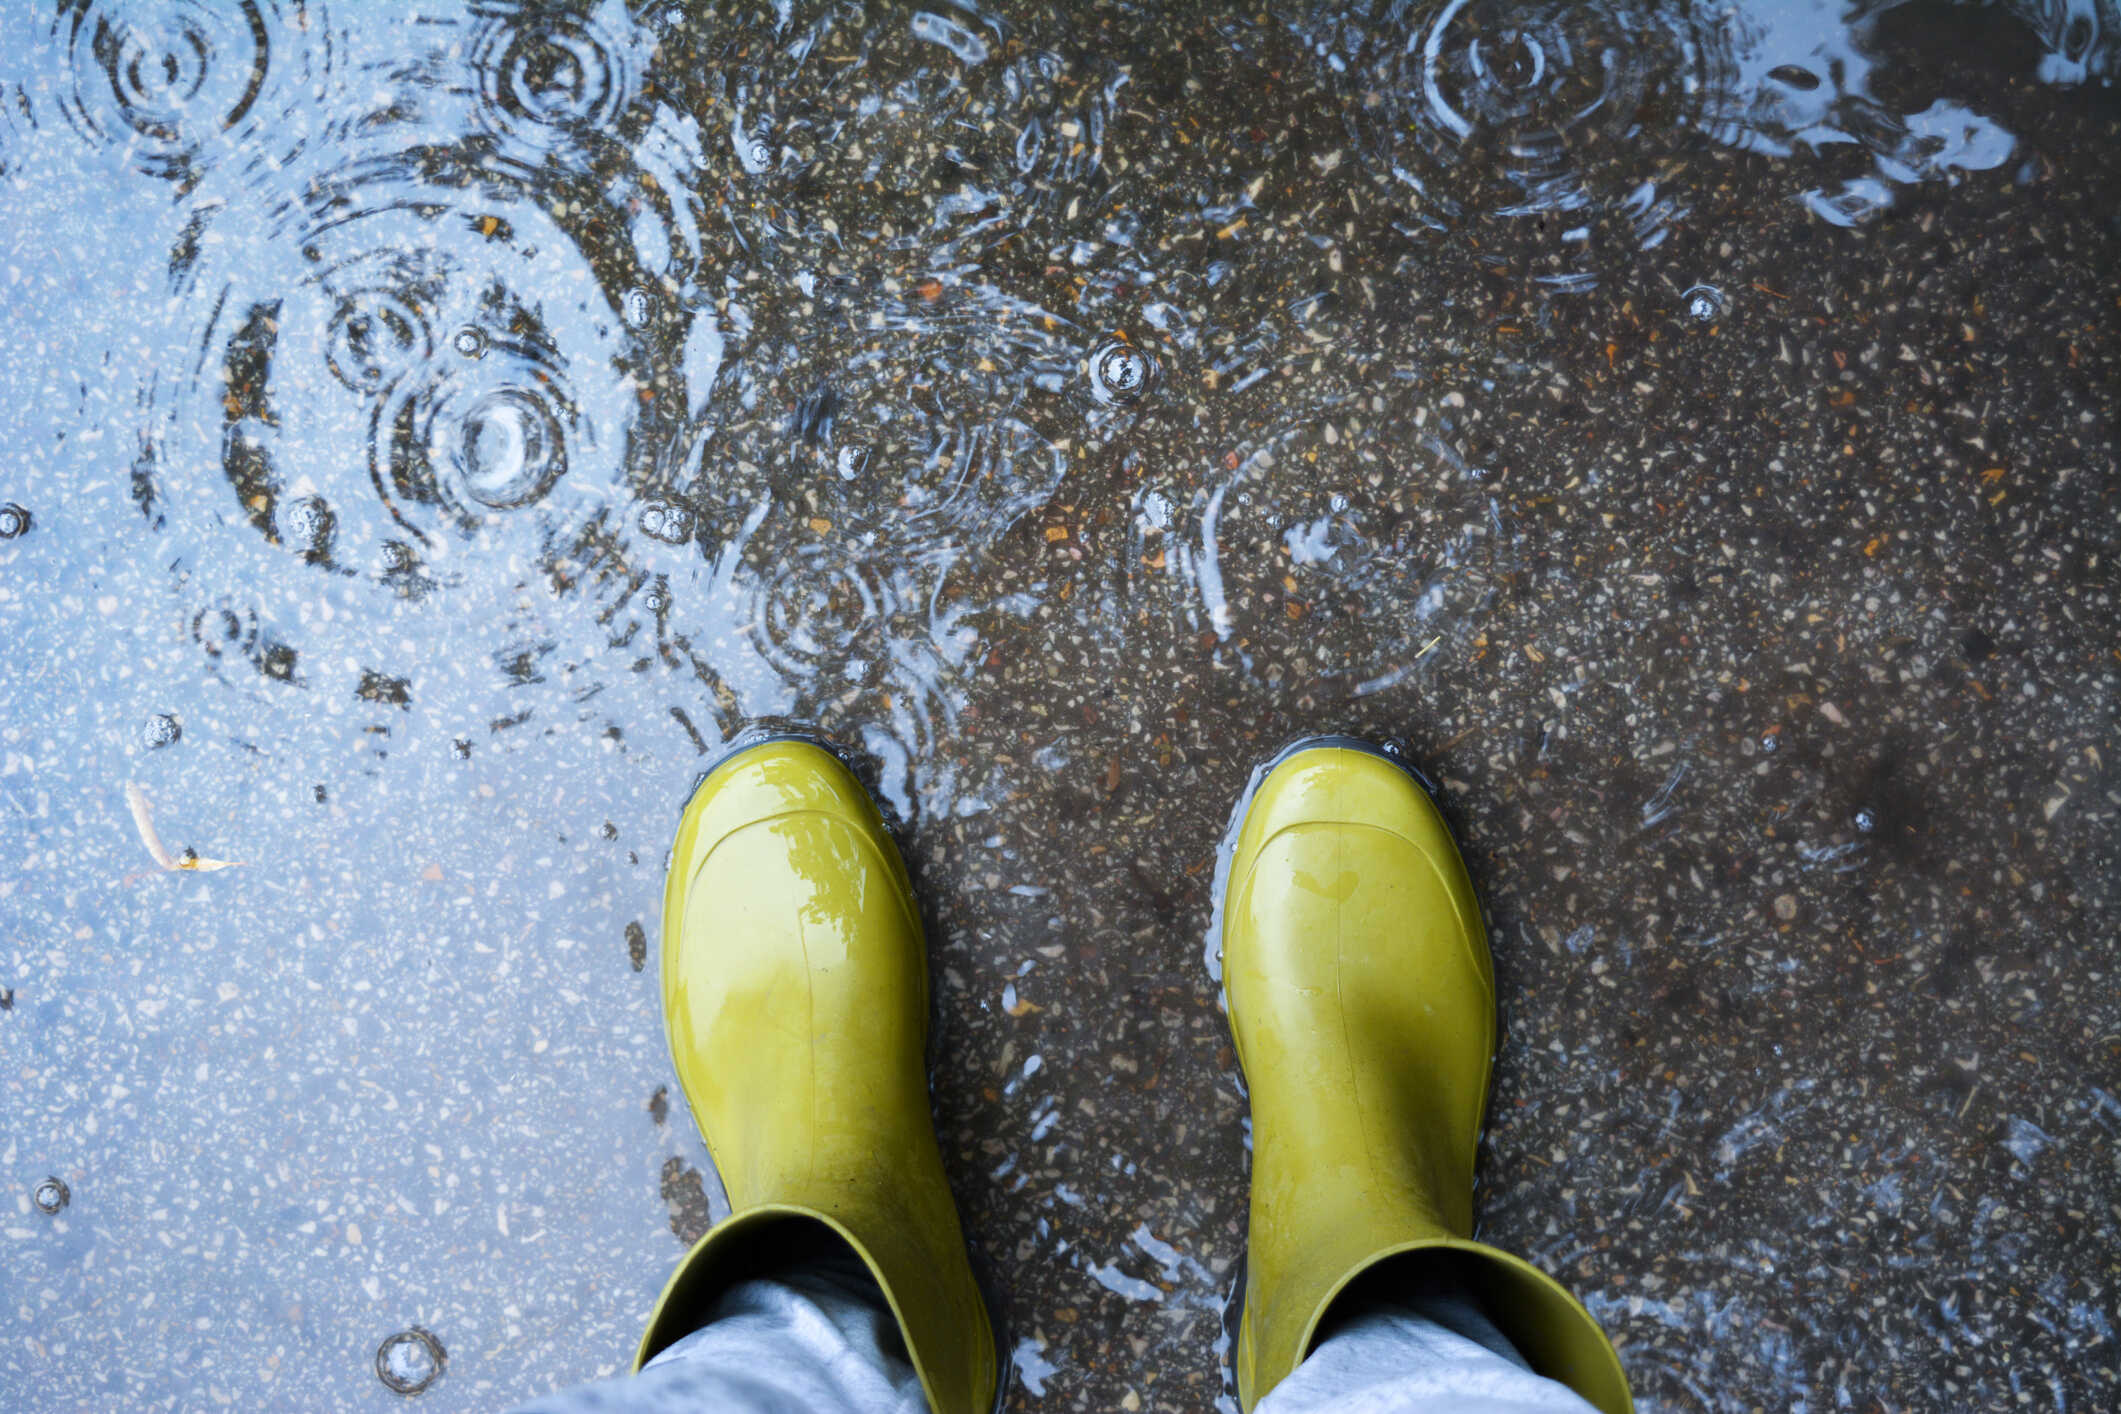 Využijte chytře dešťovou vodu: Na zalévání i praní. Pomůže vám k tomu dotace Dešťovka